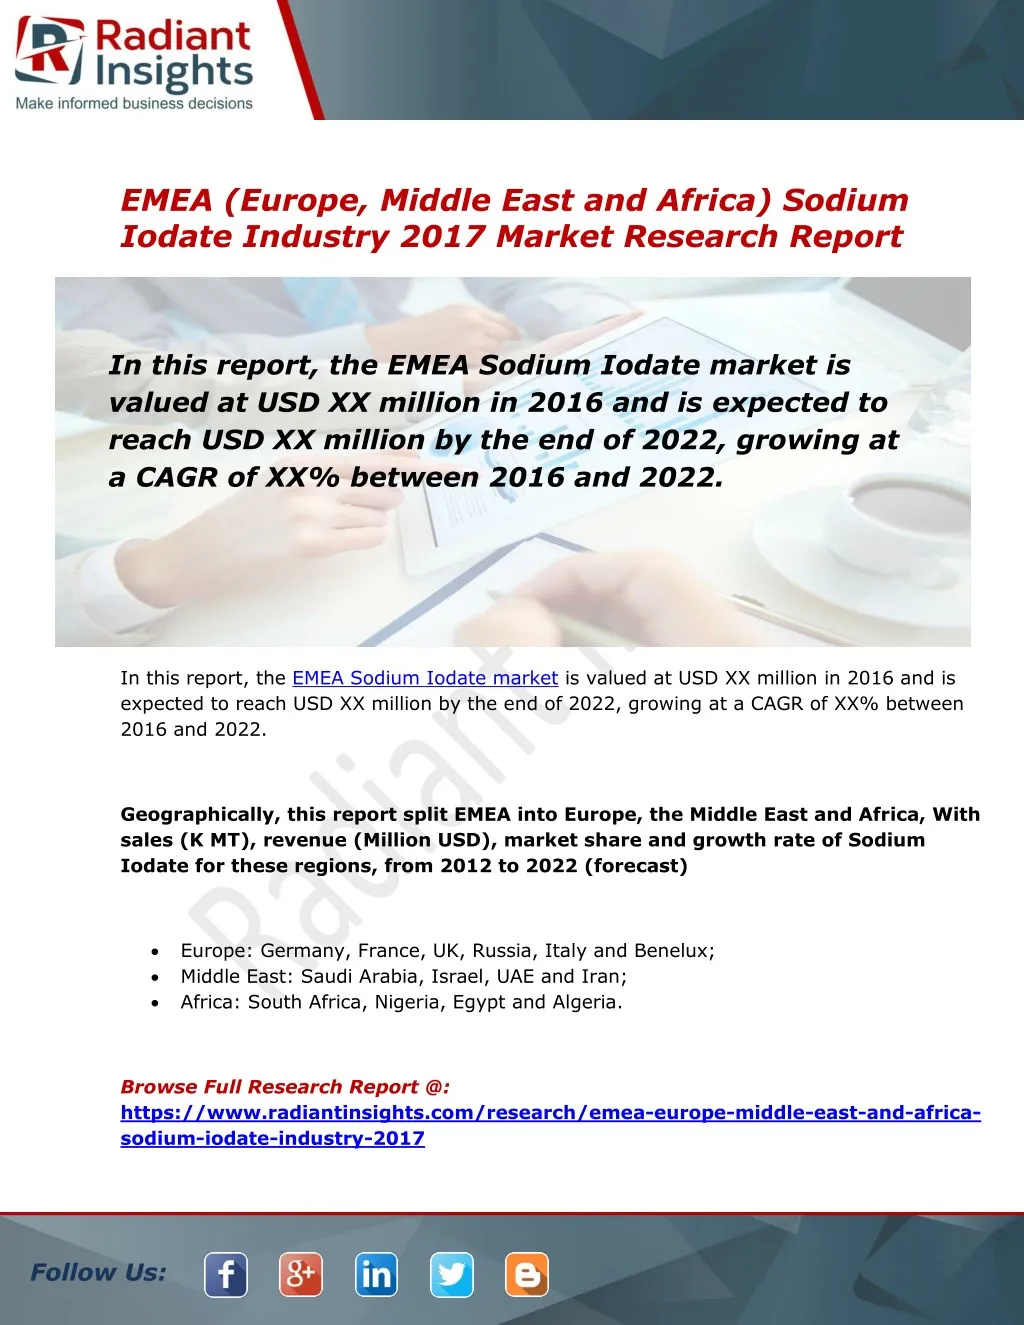 emea europe middle east and africa sodium iodate